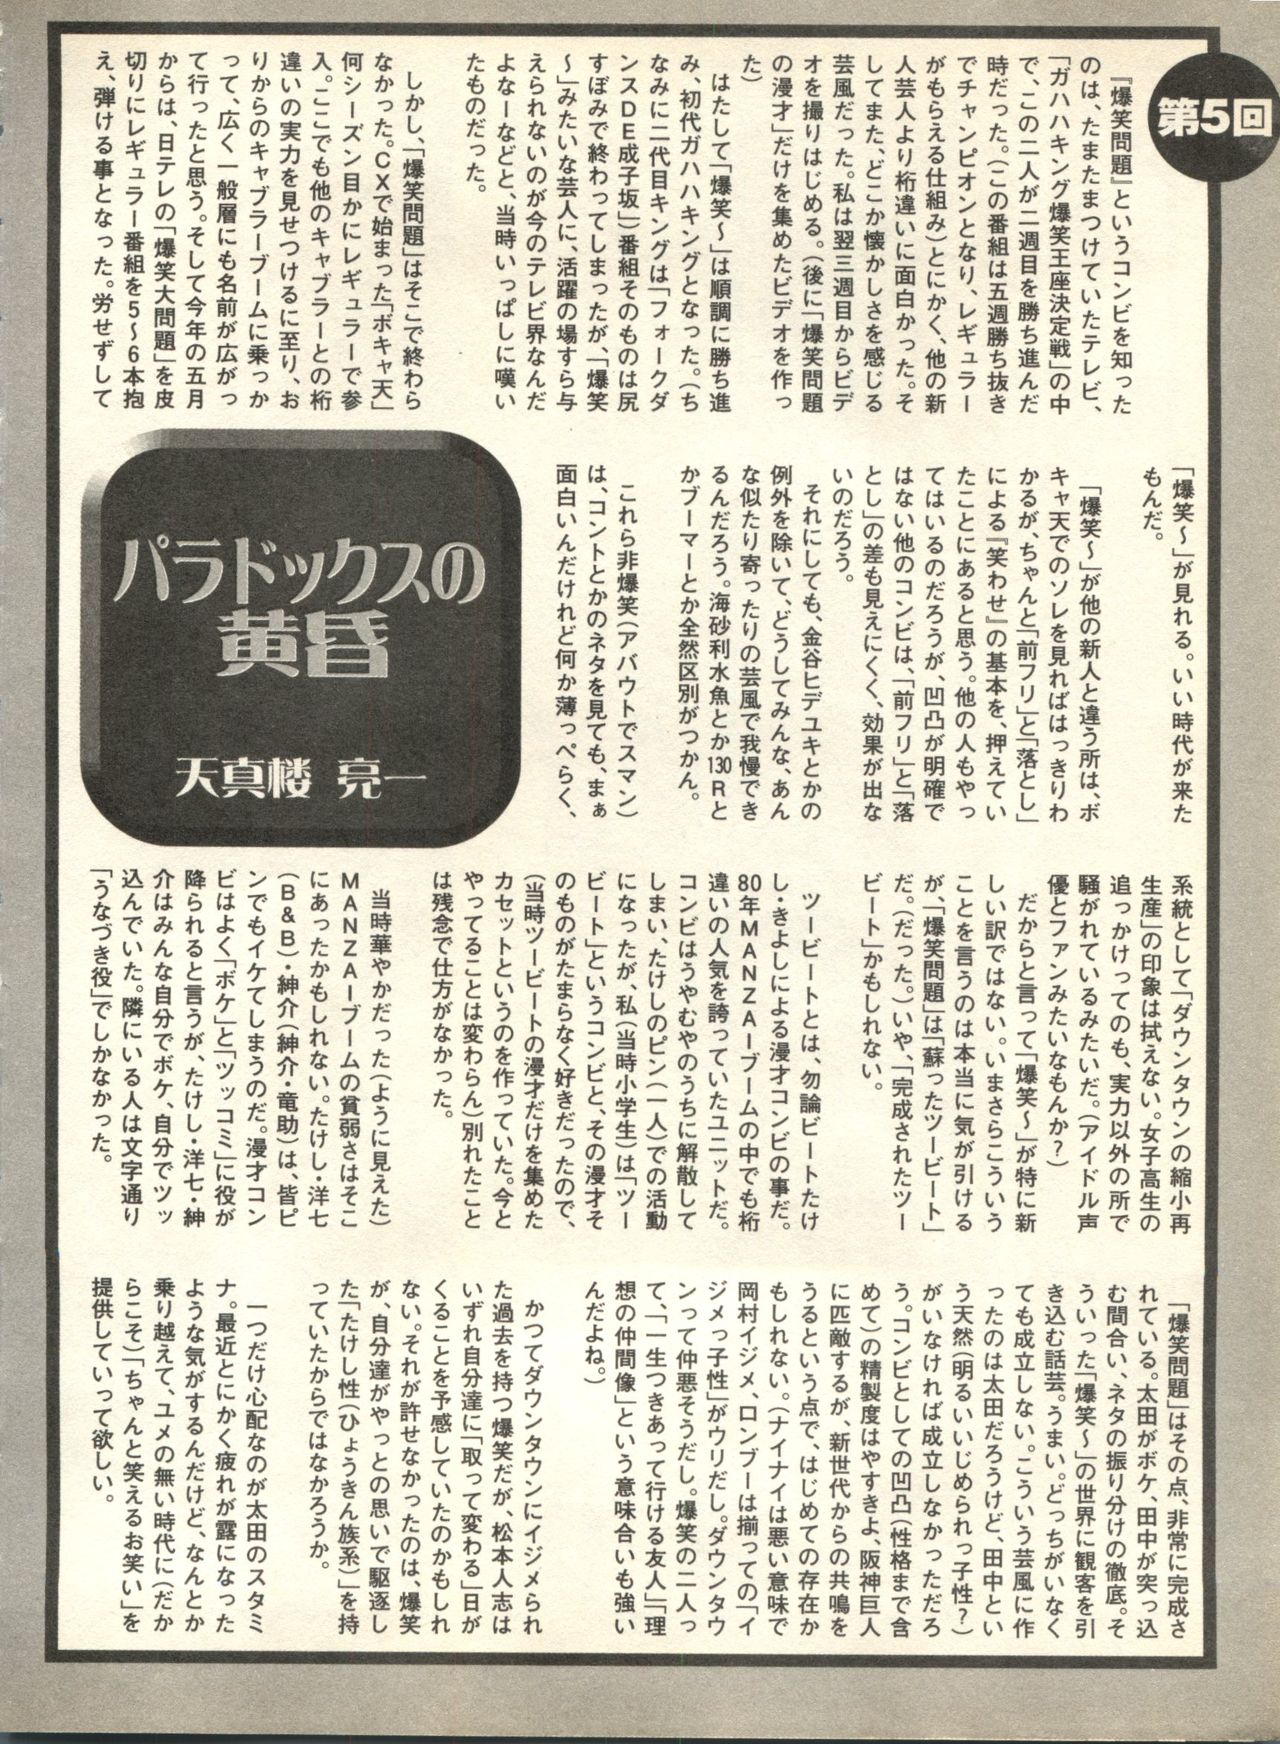 [アンソロジー] パイク Pai;kuu 1998 October Vol.13 神無月